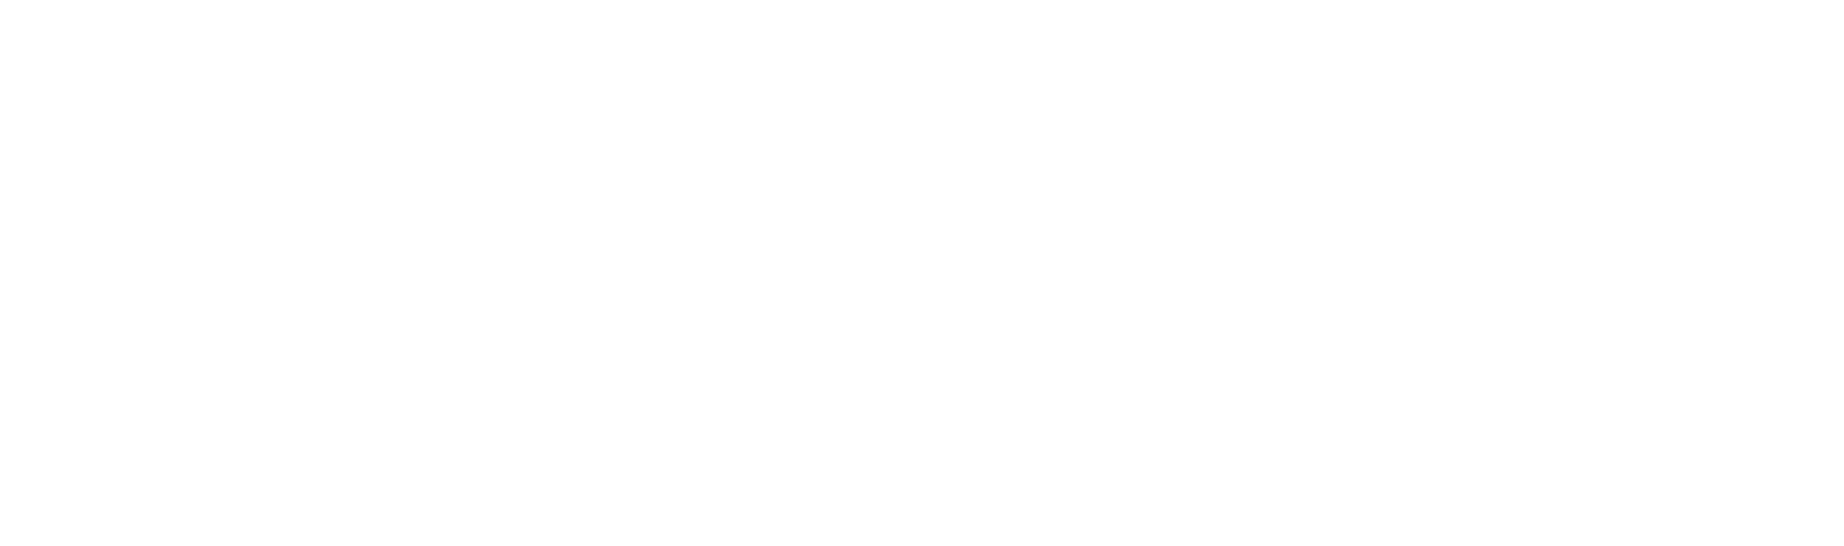 SUPER GT GT500